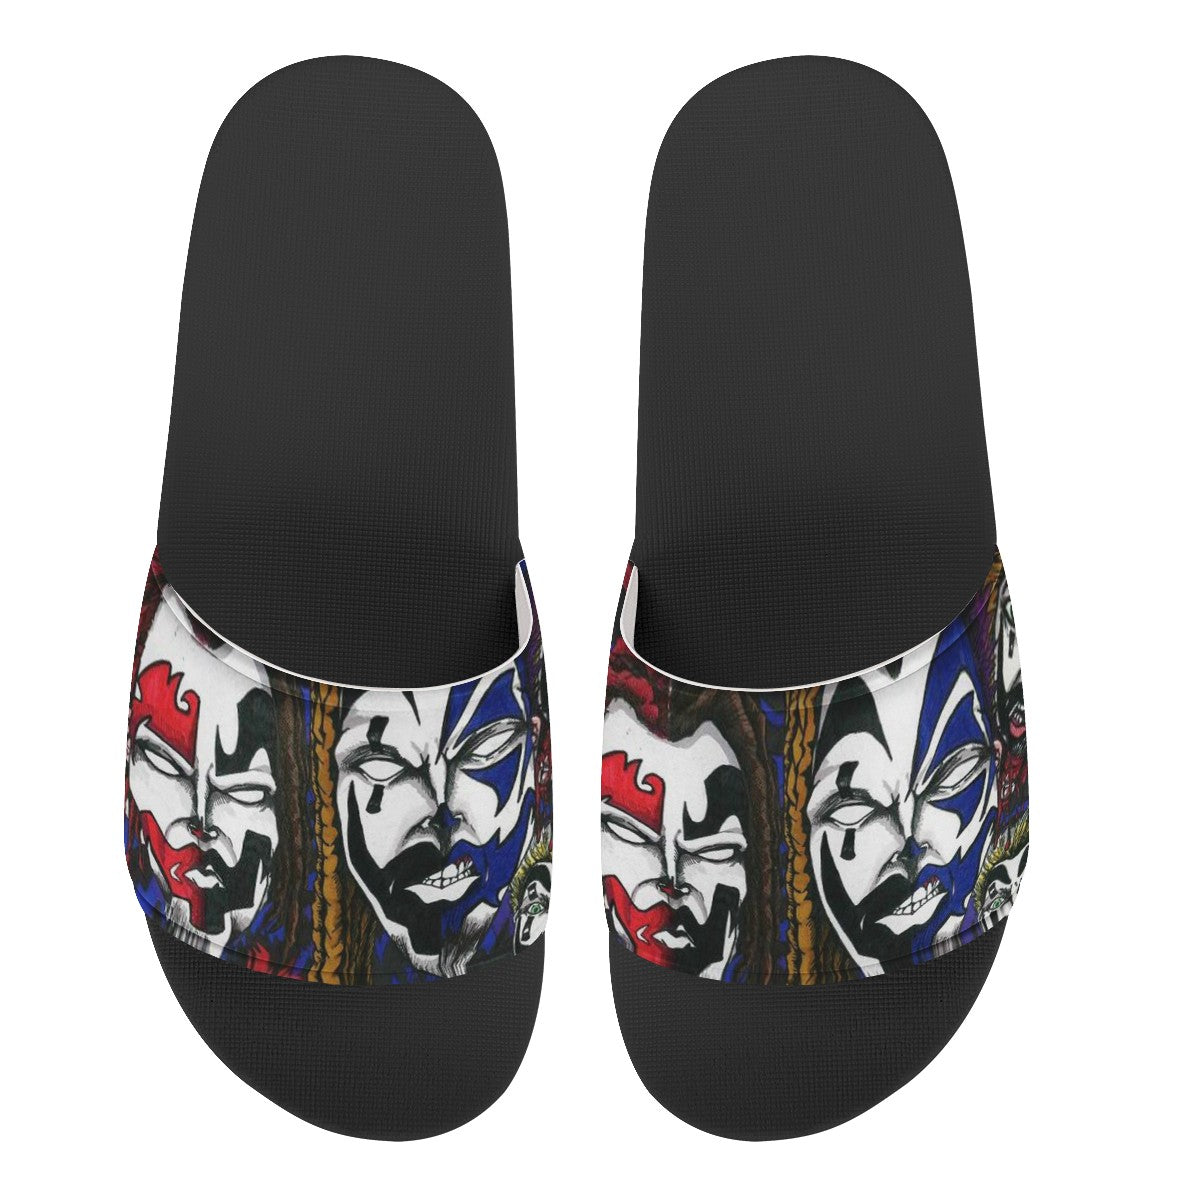 Insane Clown Posse Custom Slide Shoes